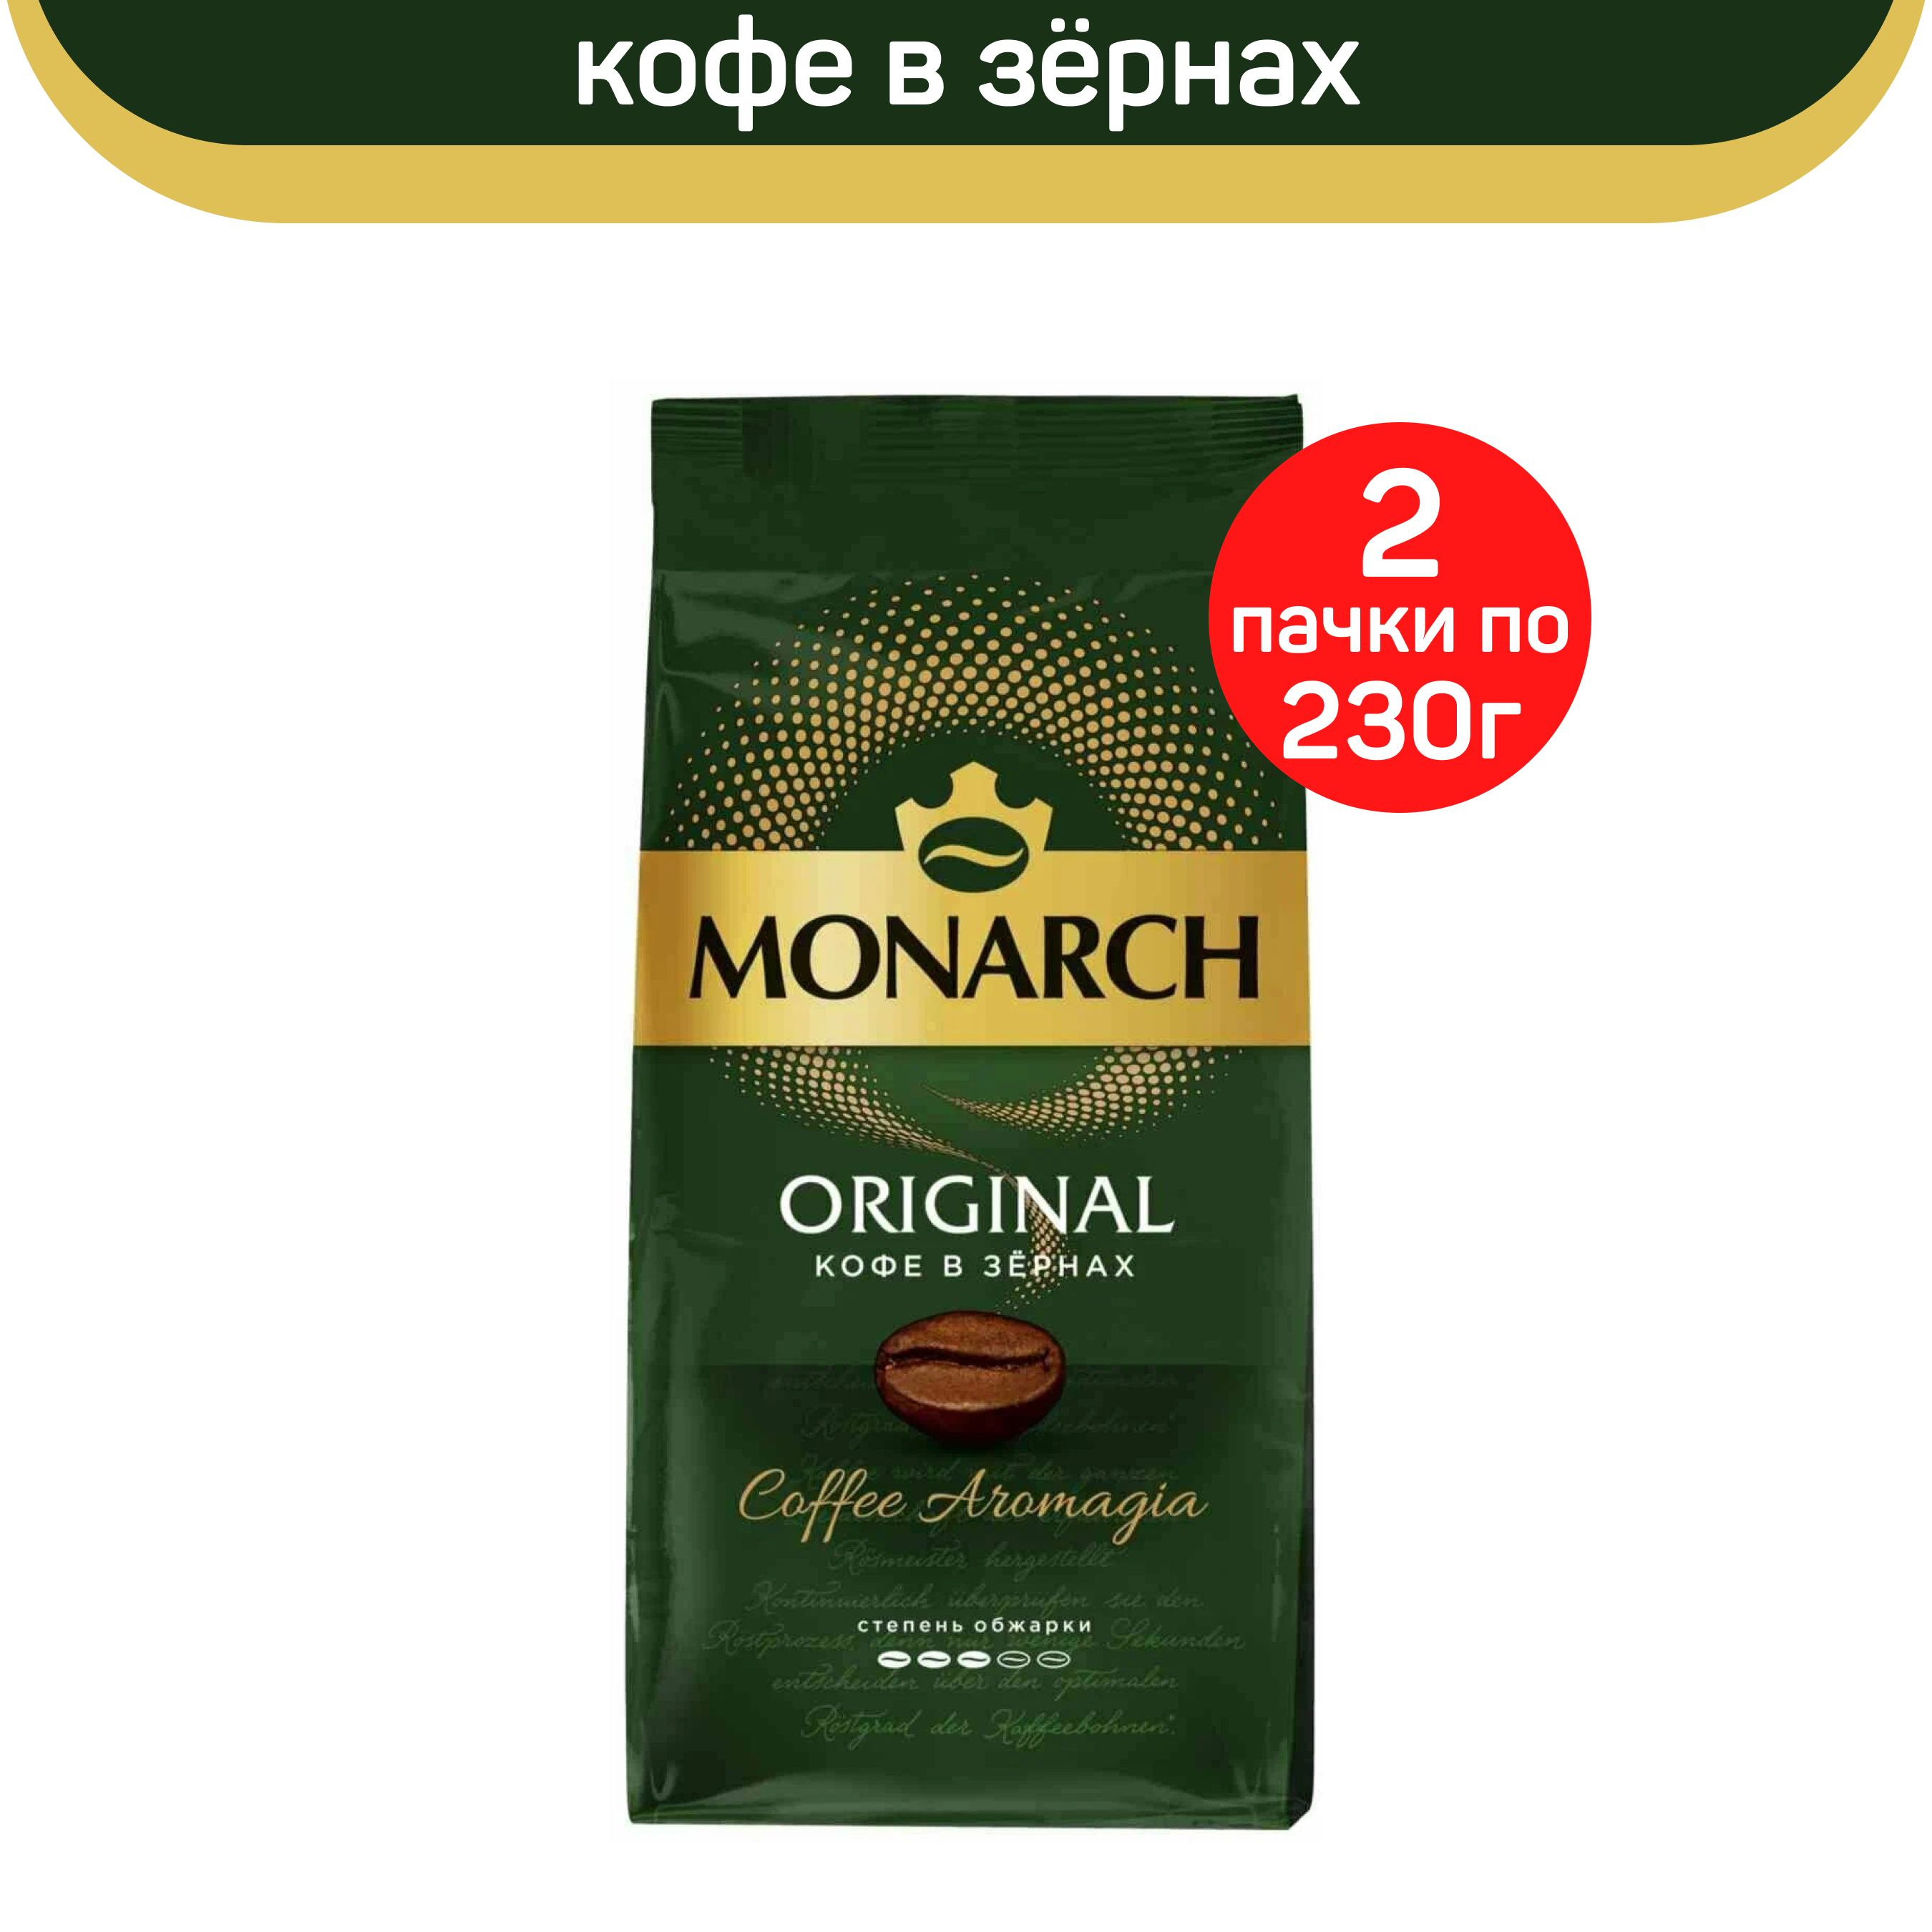 Кофе в зернах Monarch Original, 2 шт по 230 г